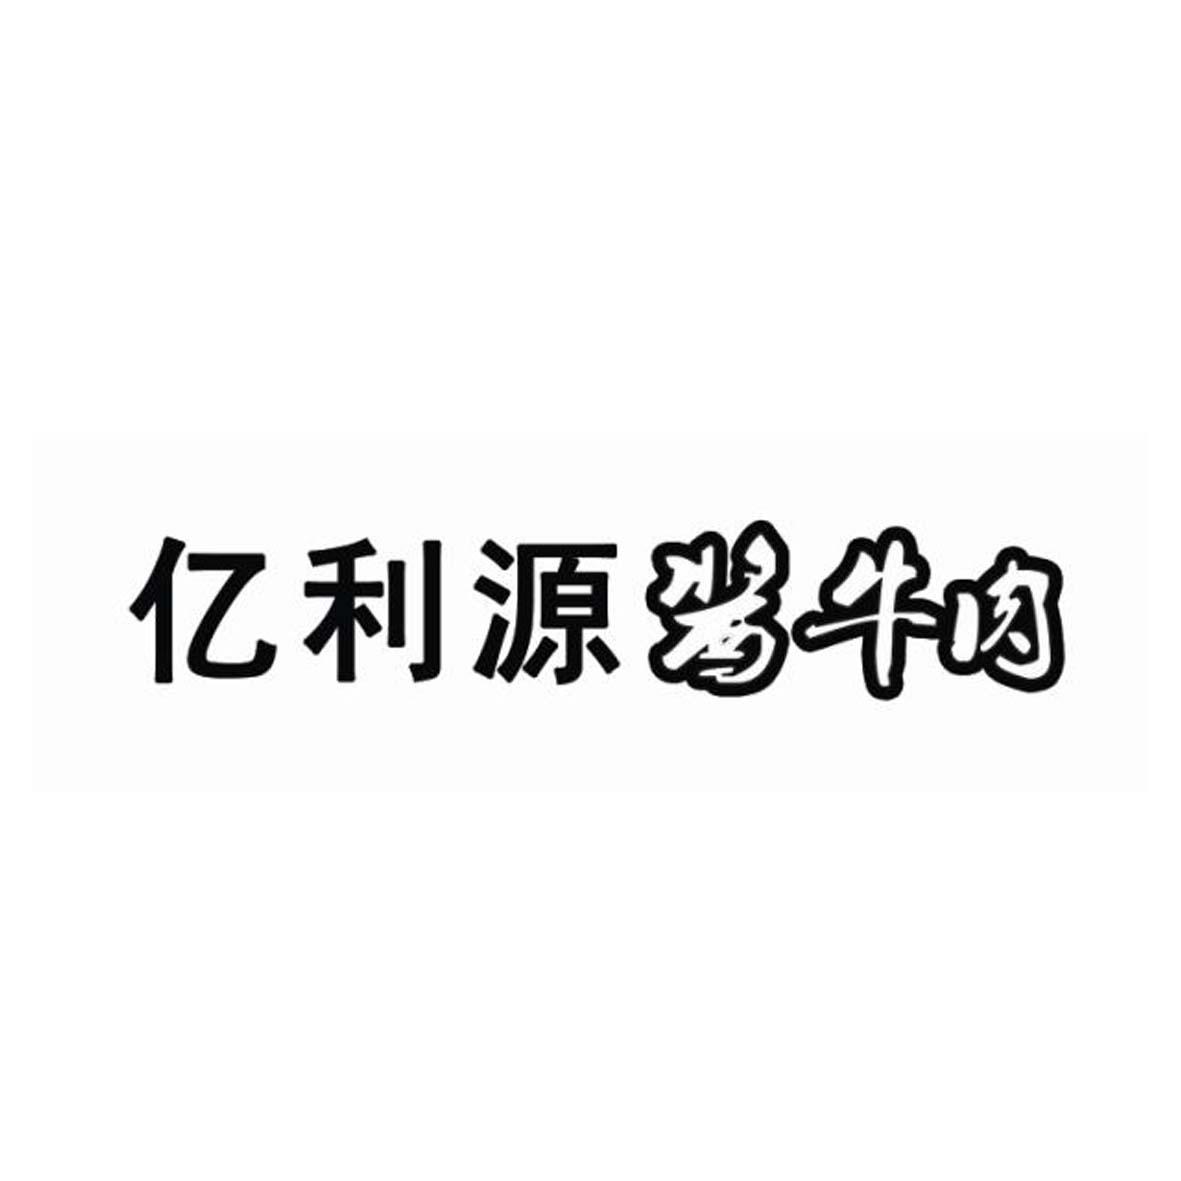 亿利源酱牛肉logo